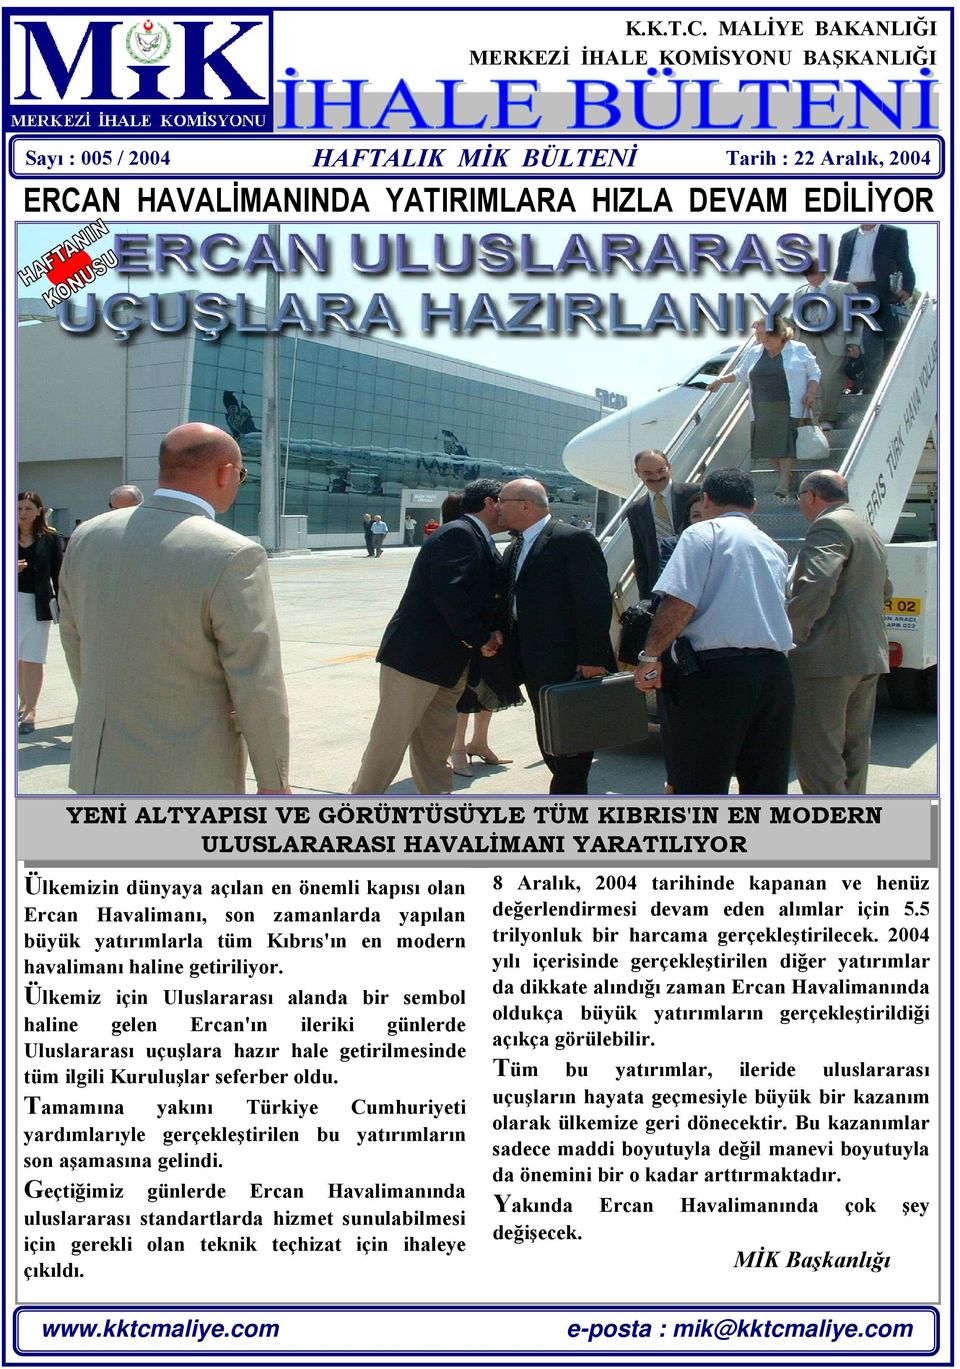 TÜM KIBRIS'IN EN MODERN ULUSLARARASI HAVALİMANI YARATILIYOR Ülkemizin dünyaya açılan en önemli kapısı olan Ercan Havalimanı, son zamanlarda yapılan büyük yatırımlarla tüm Kıbrıs'ın en modern